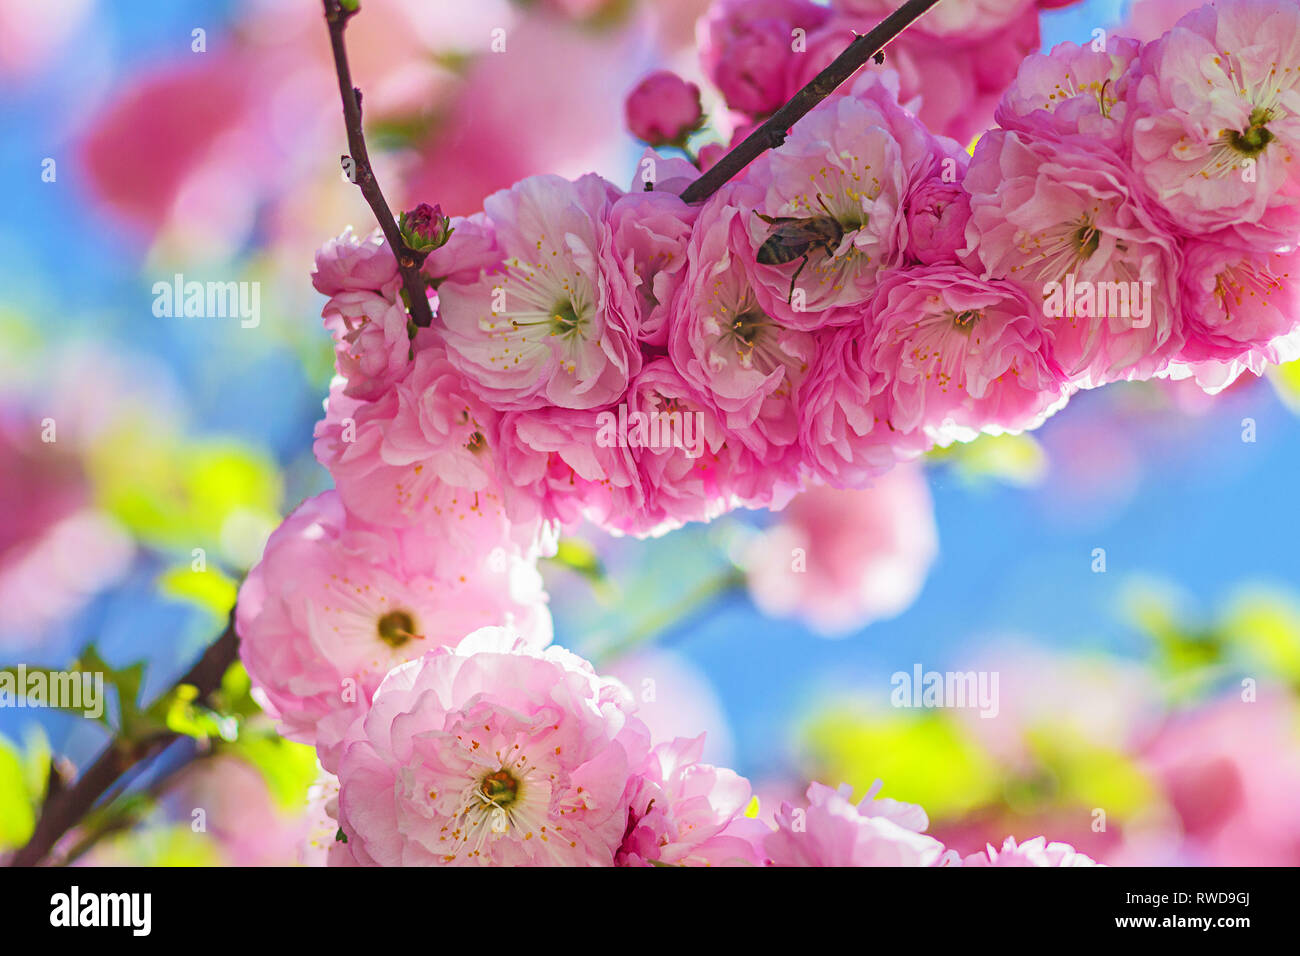 Bernstein Rose Blume mit Biene auf der Blume. Sting Insekten bestäuben Der amber Rose Blume. Ukrainische Natur closeup Makro. Stockfoto